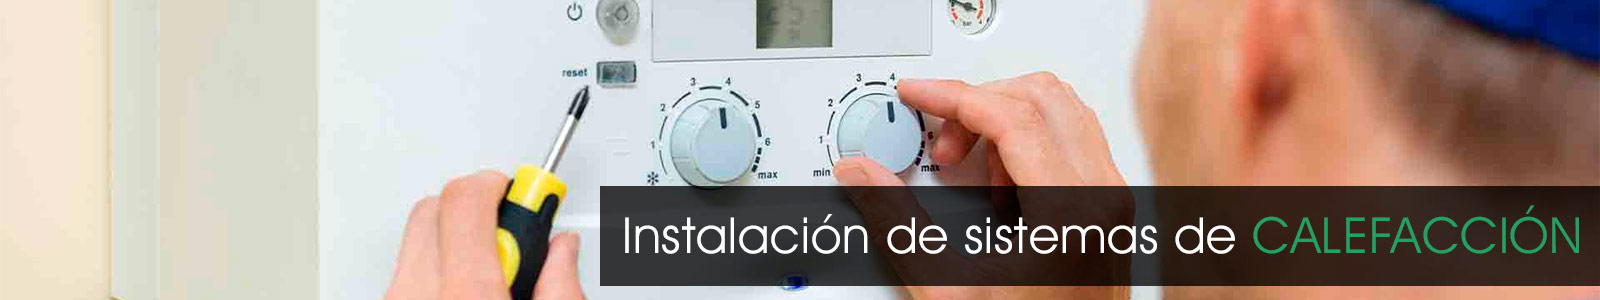 Instalacion de sistemas de calefaccion en Madrid.